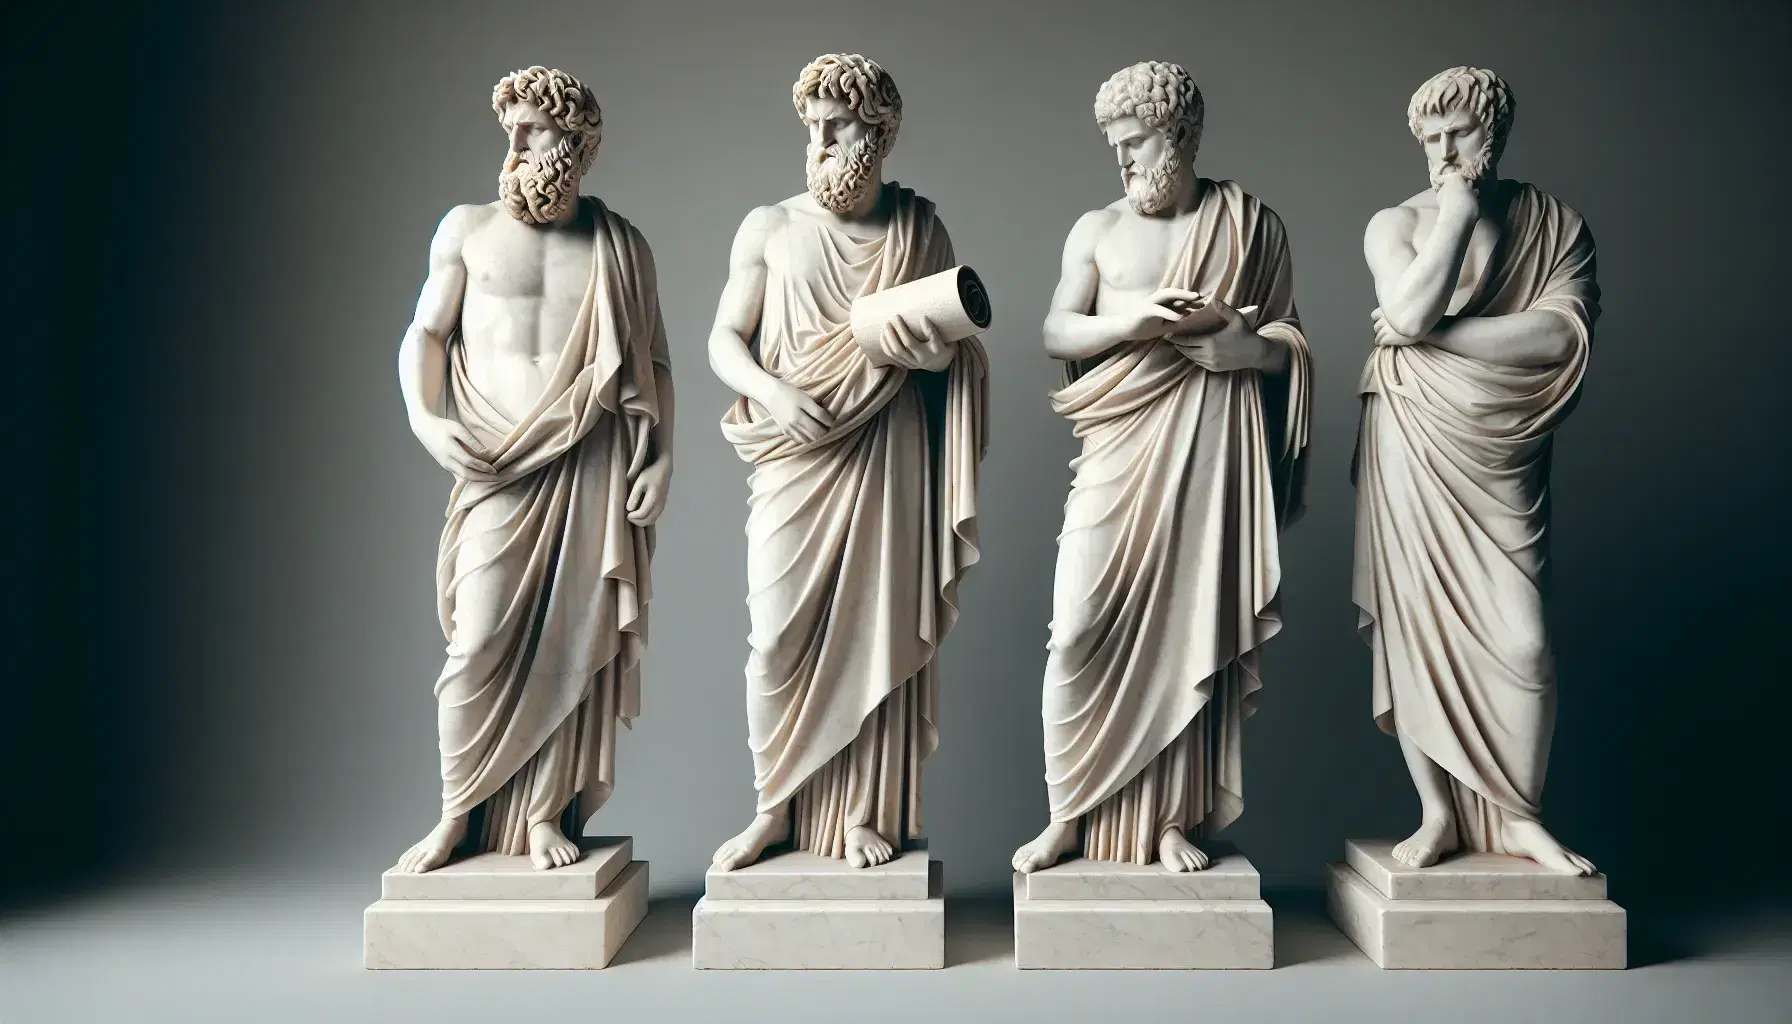 Esculturas de mármol blanco de filósofos griegos con cielo azul de fondo, mostrando posturas de enseñanza y reflexión, iluminadas por luz solar.